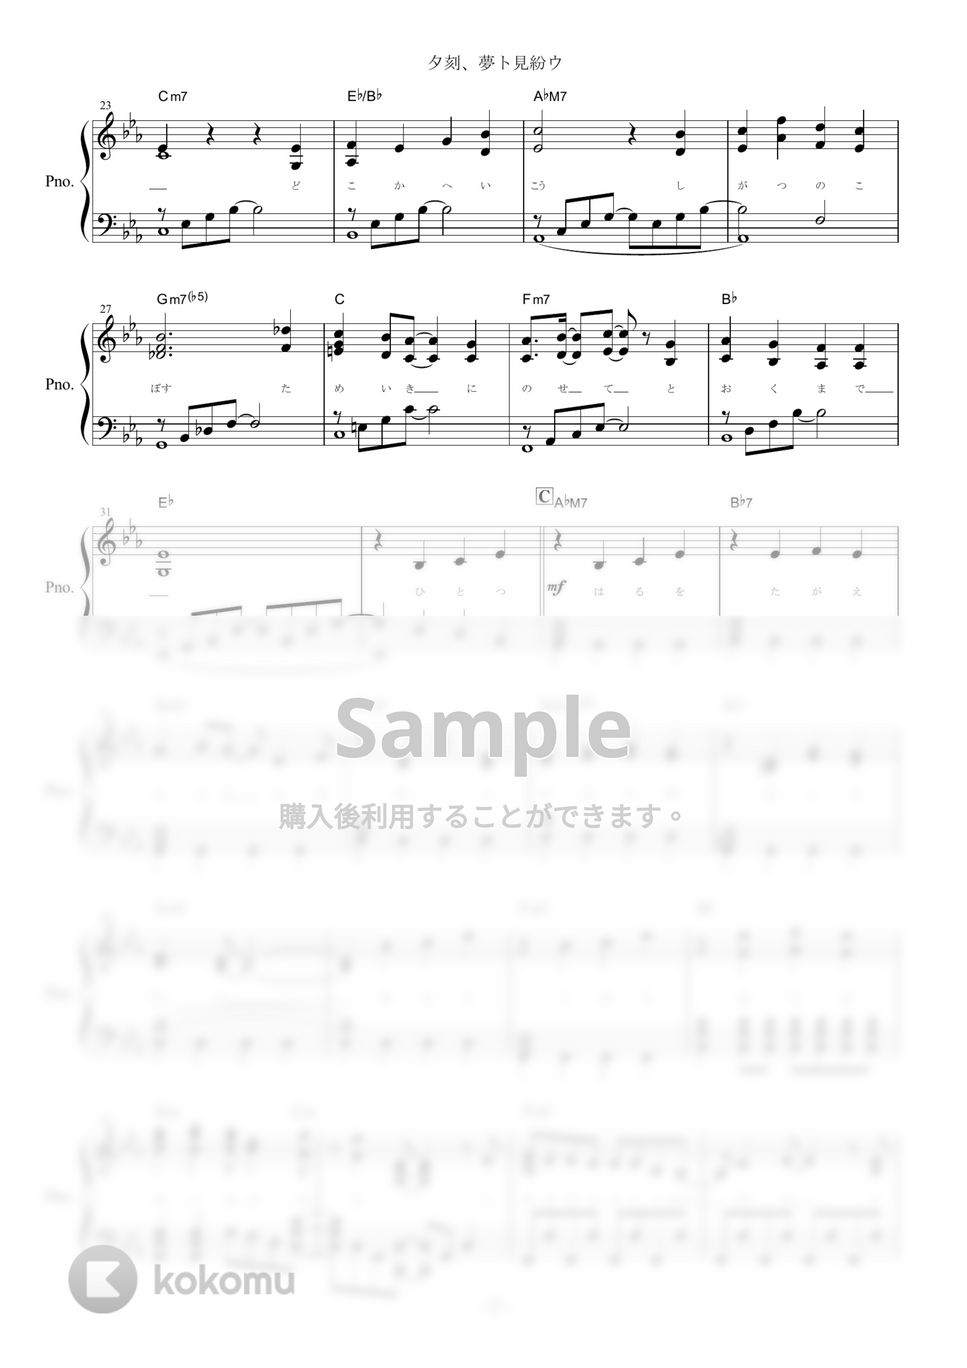 After the Rain - 夕刻、夢ト見紛ウ (ピアノ楽譜/全9ページ) by yoshi